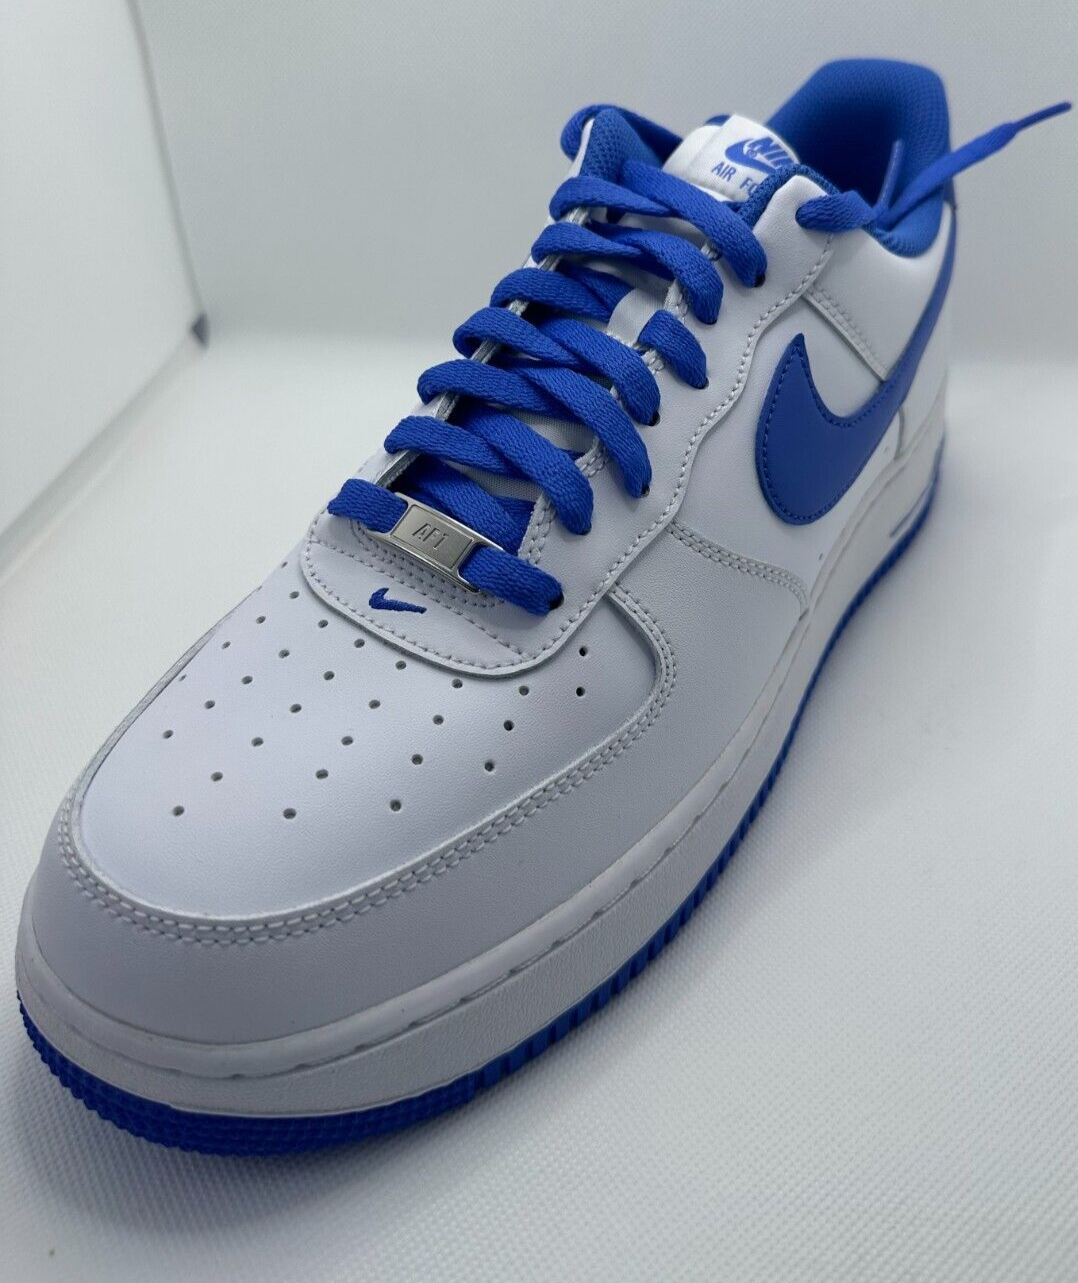 Nike Air Force 1 White Medium Blue DH7561-104 Release Date